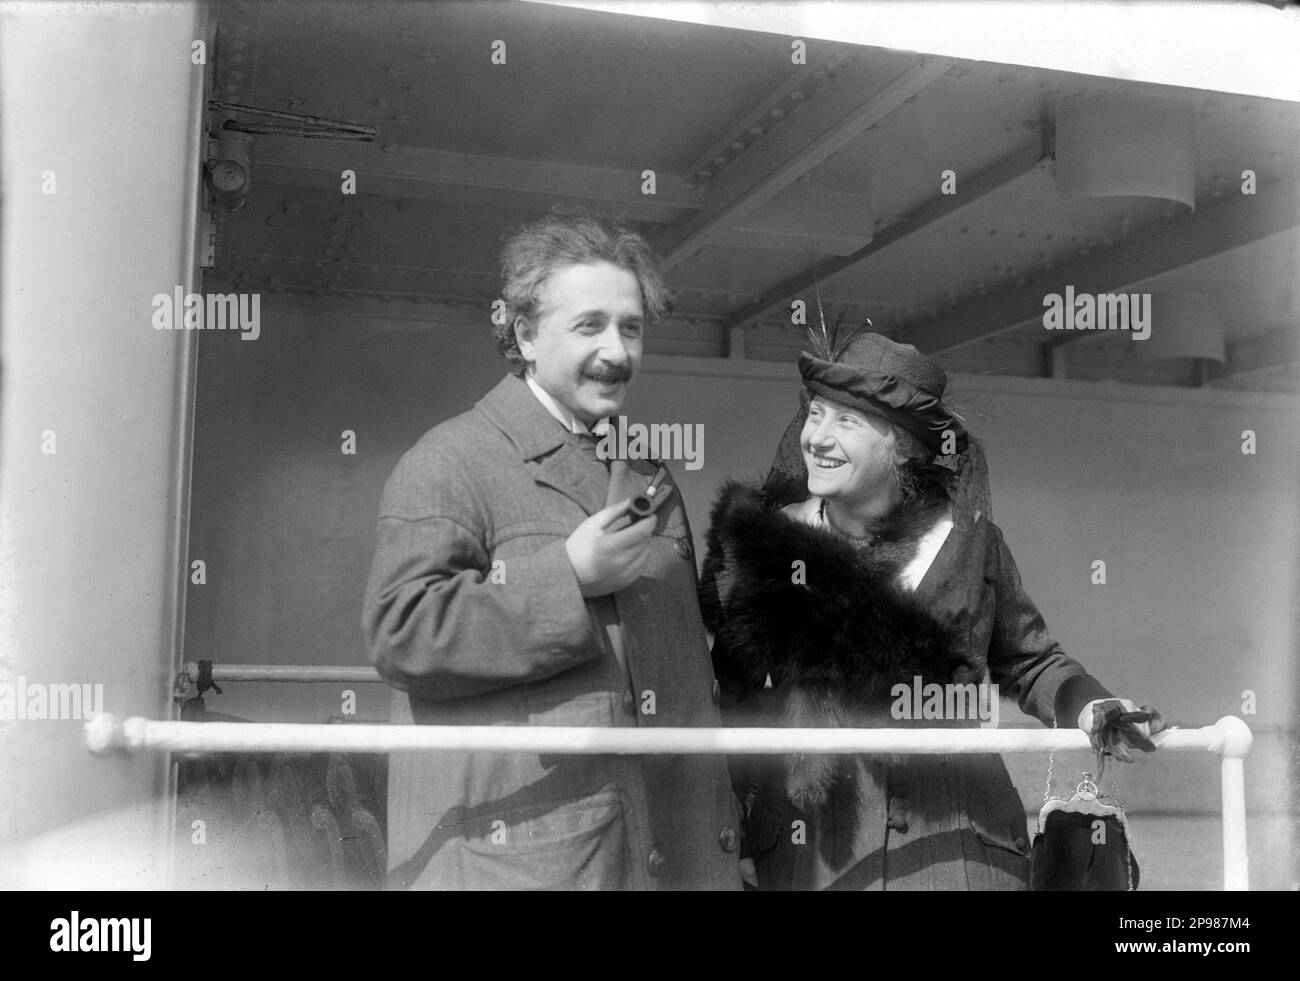 1921 , 4 . april , New York , USA : der deutsche Physiker ALBERT EINSTEIN ( 1879 - 1955 ) , Nobelpreisträger 1921 . Auf diesem Foto Albert Einstein mit seiner Frau ELSA EINSTEIN . - foto storiche - foto storica - - scienziato - Wissenschaftler - Portrait - ritratto - Physik - FISICA - FISICO - SCIENZA - SCIENCE - Baffi - Schnurrbart - PREMIO NOBEL PER LA FISICA - Atomica - Atomo - scienziato - Genius - genio - marito e moglie - Lächeln - sorriso - Pipa - Pipe - Nave - Boot - Ocean Liner - Transatlantico - Nave - Boot --- Archivio GBB Argenzia Stockfoto